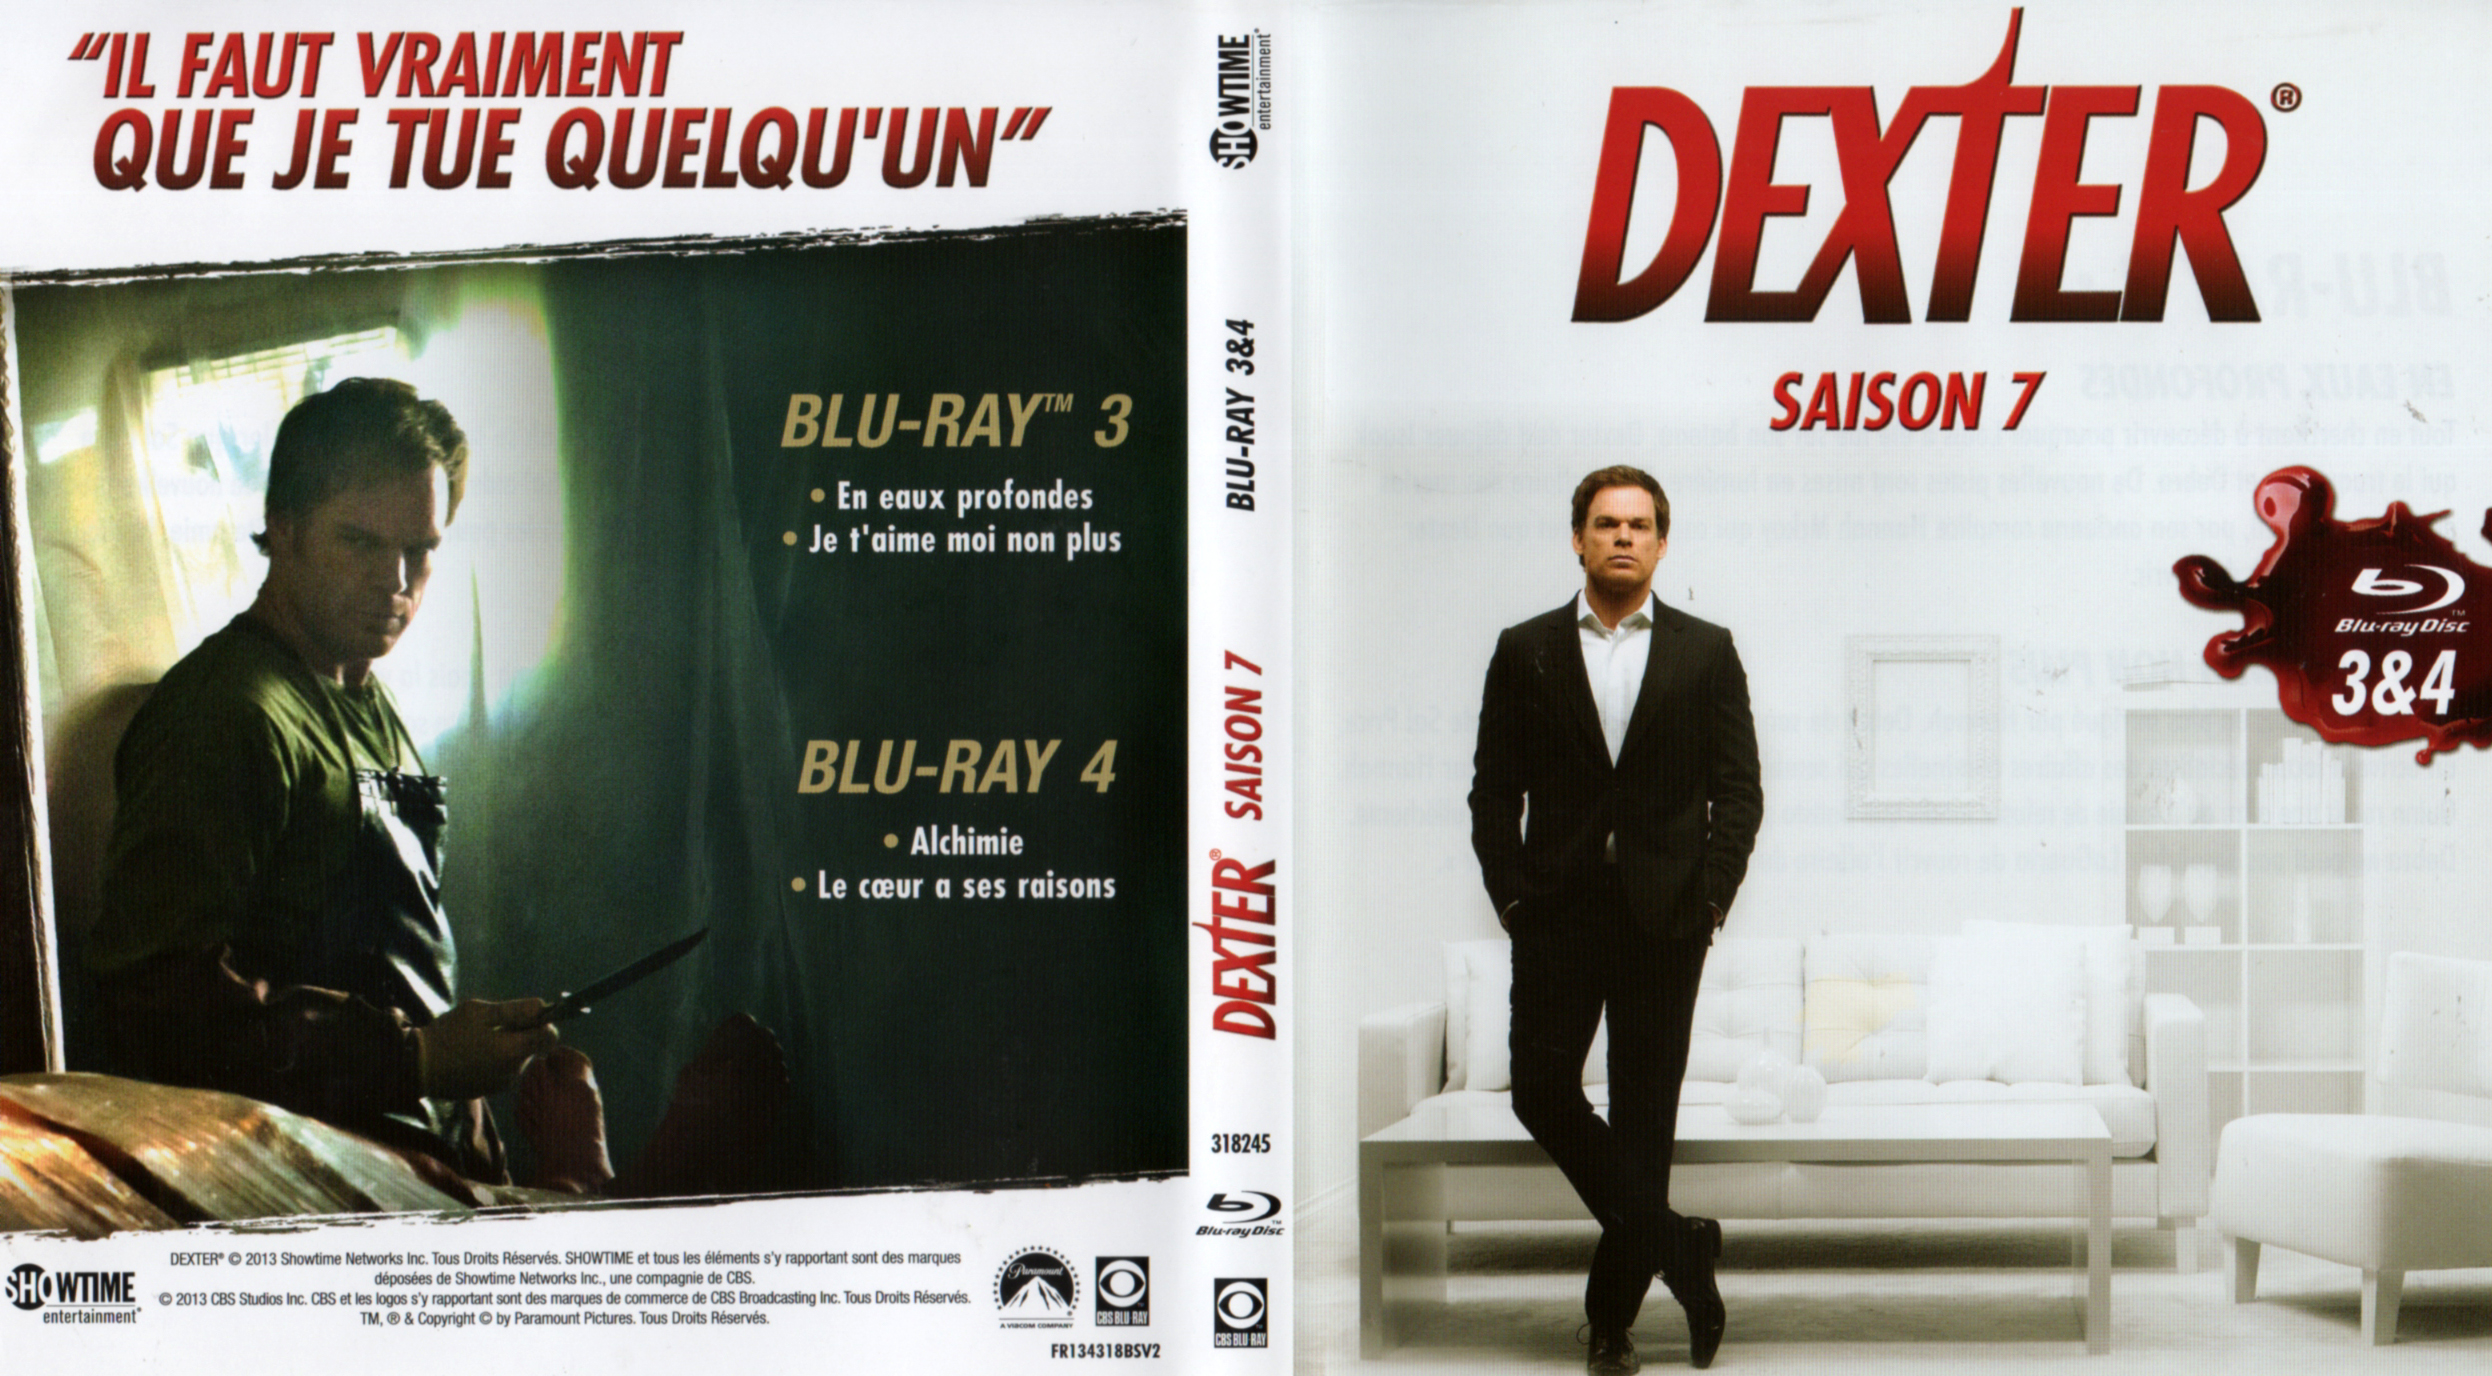 Jaquette DVD Dexter saison 7 DISC 2 (BLU-RAY)